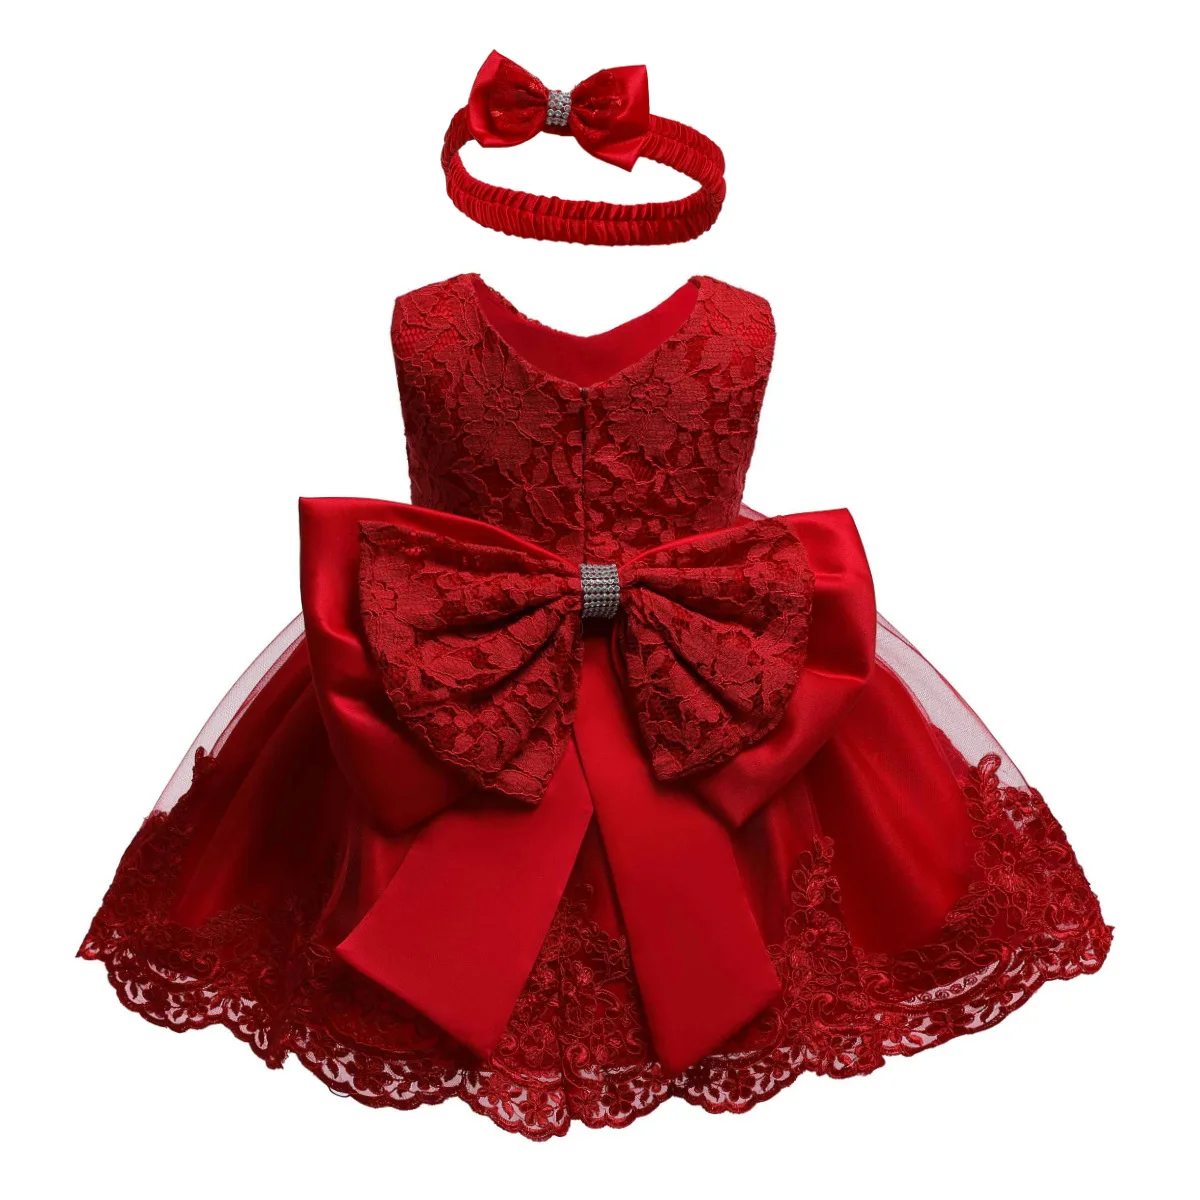 Принцесса Детское платье для новорожденных девочек кружевное платье без рукавов платье с бантом бальное торжественное праздничные нарядные платья на возраст от 0 до 24 месяцев